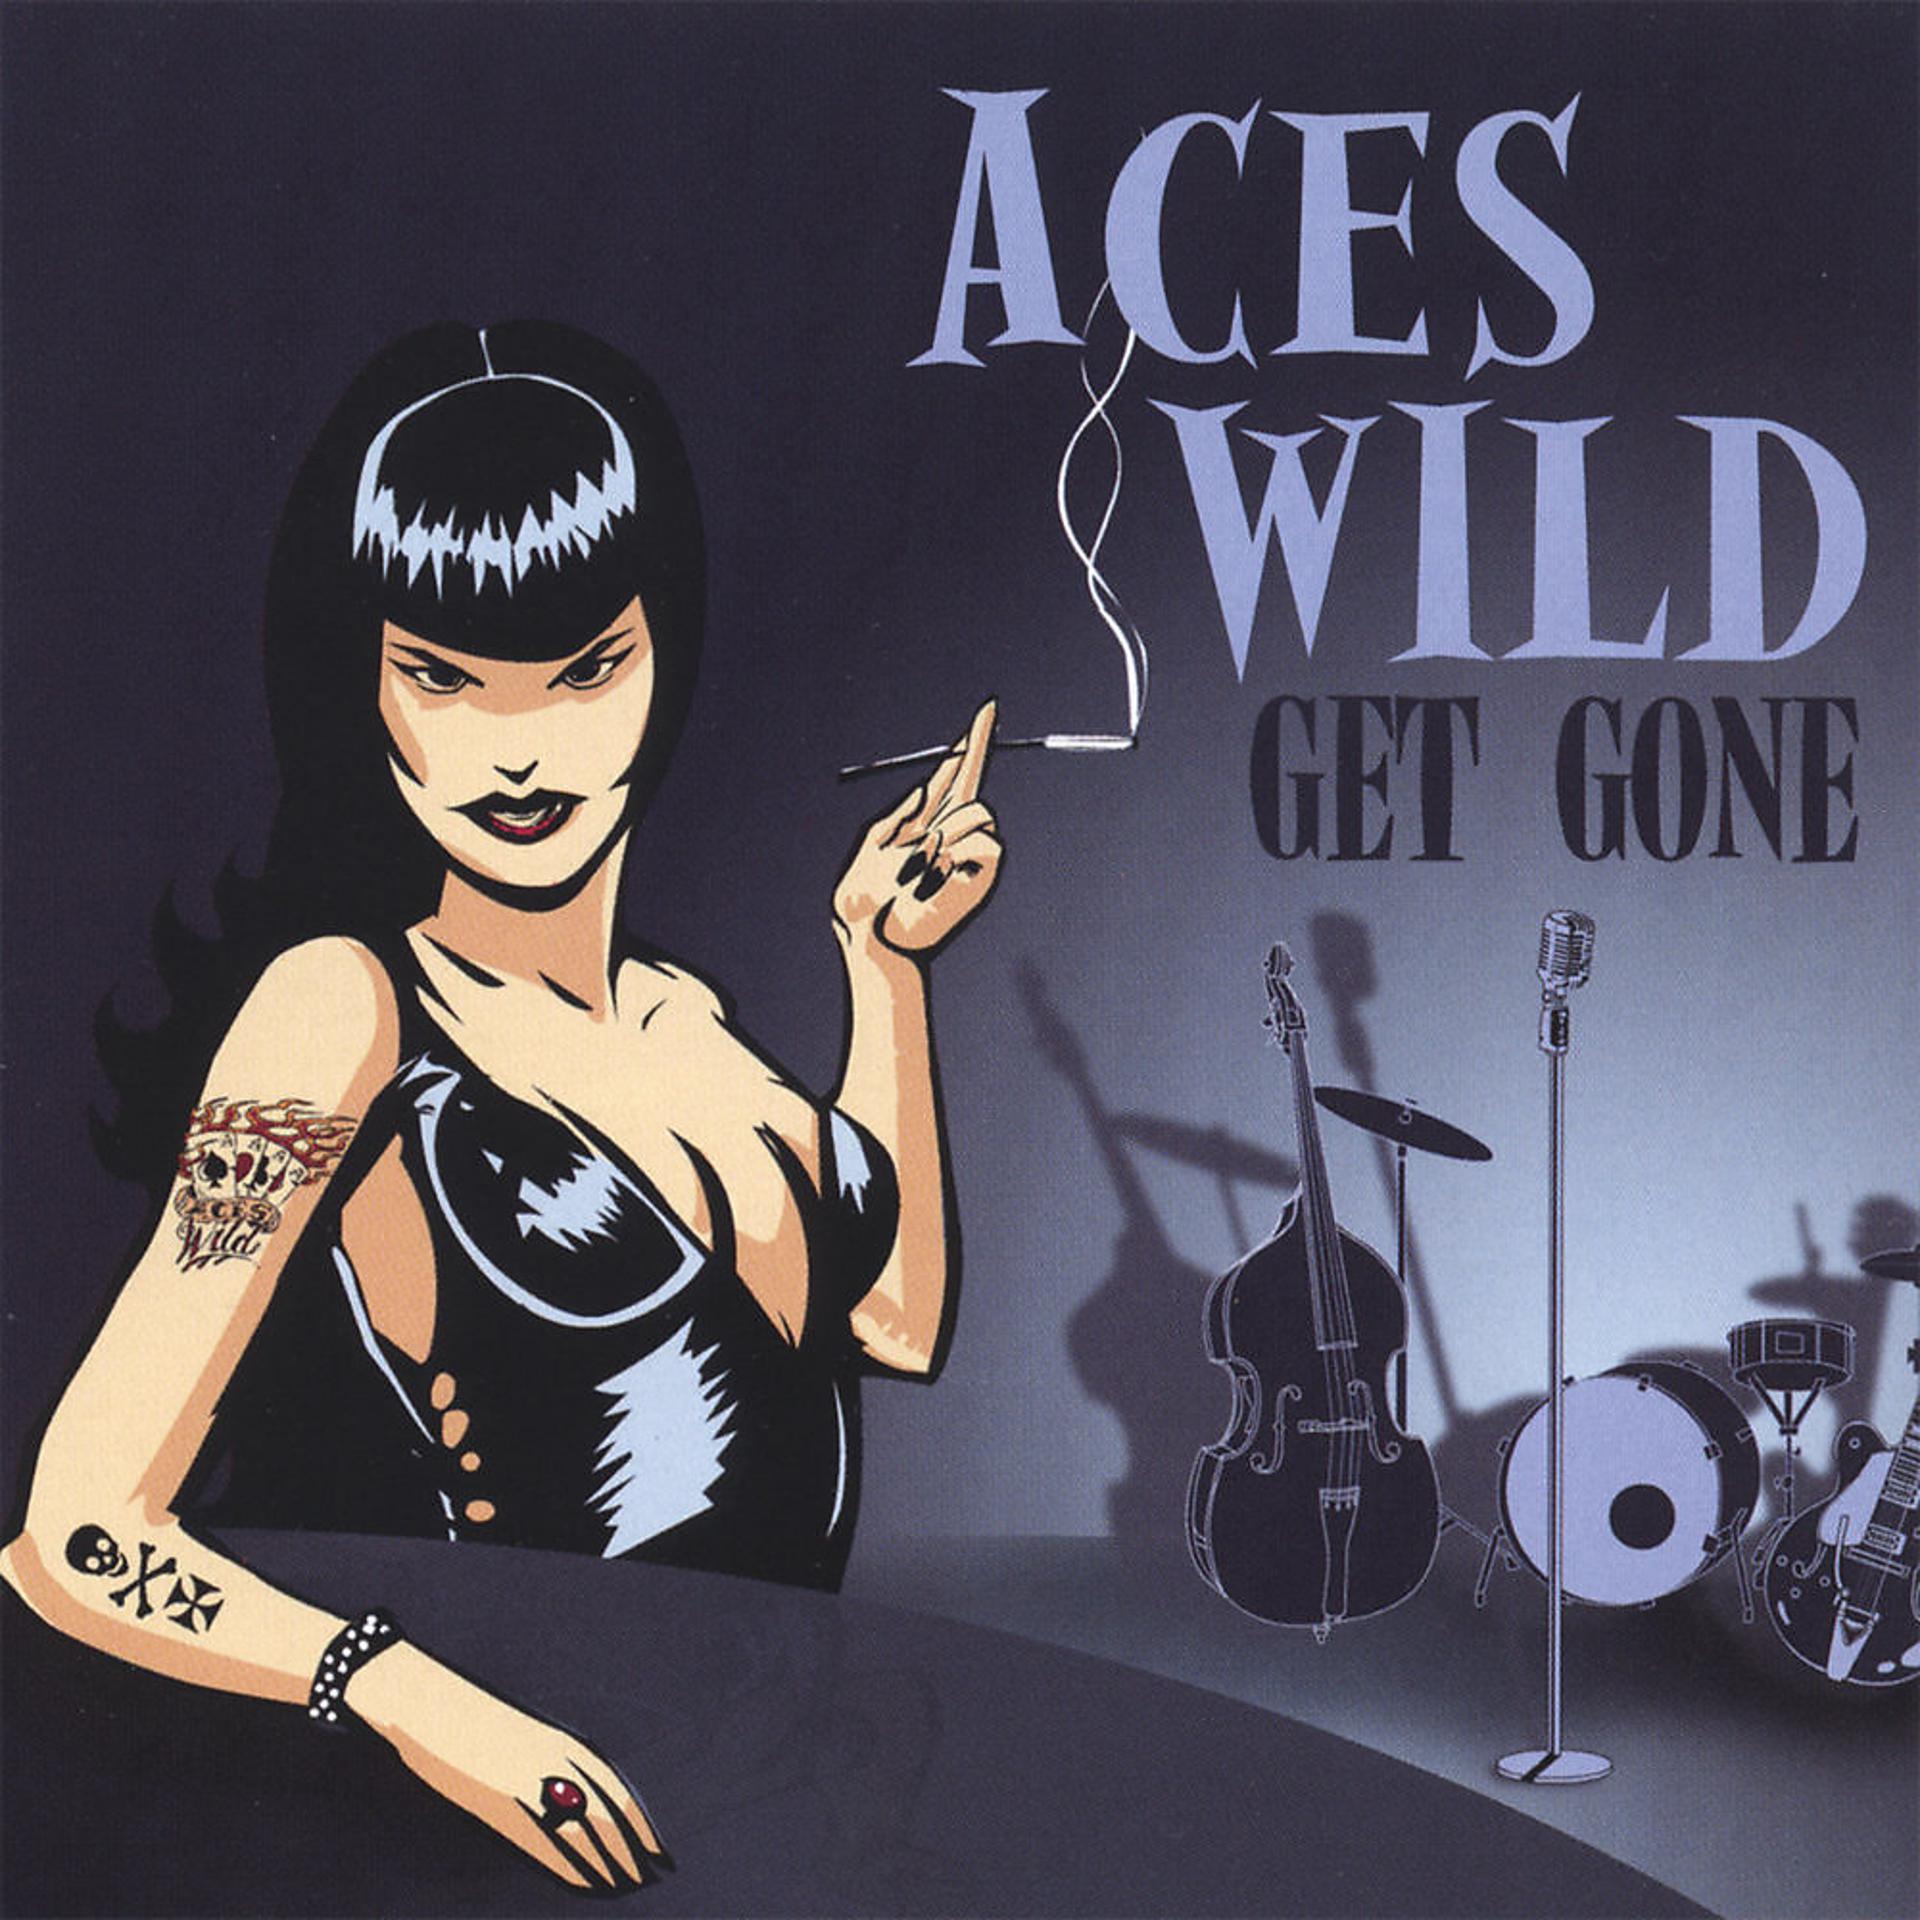 Песня get gone. Aces Wild. Мелодия Wild. Aces Wild-1994 Race.